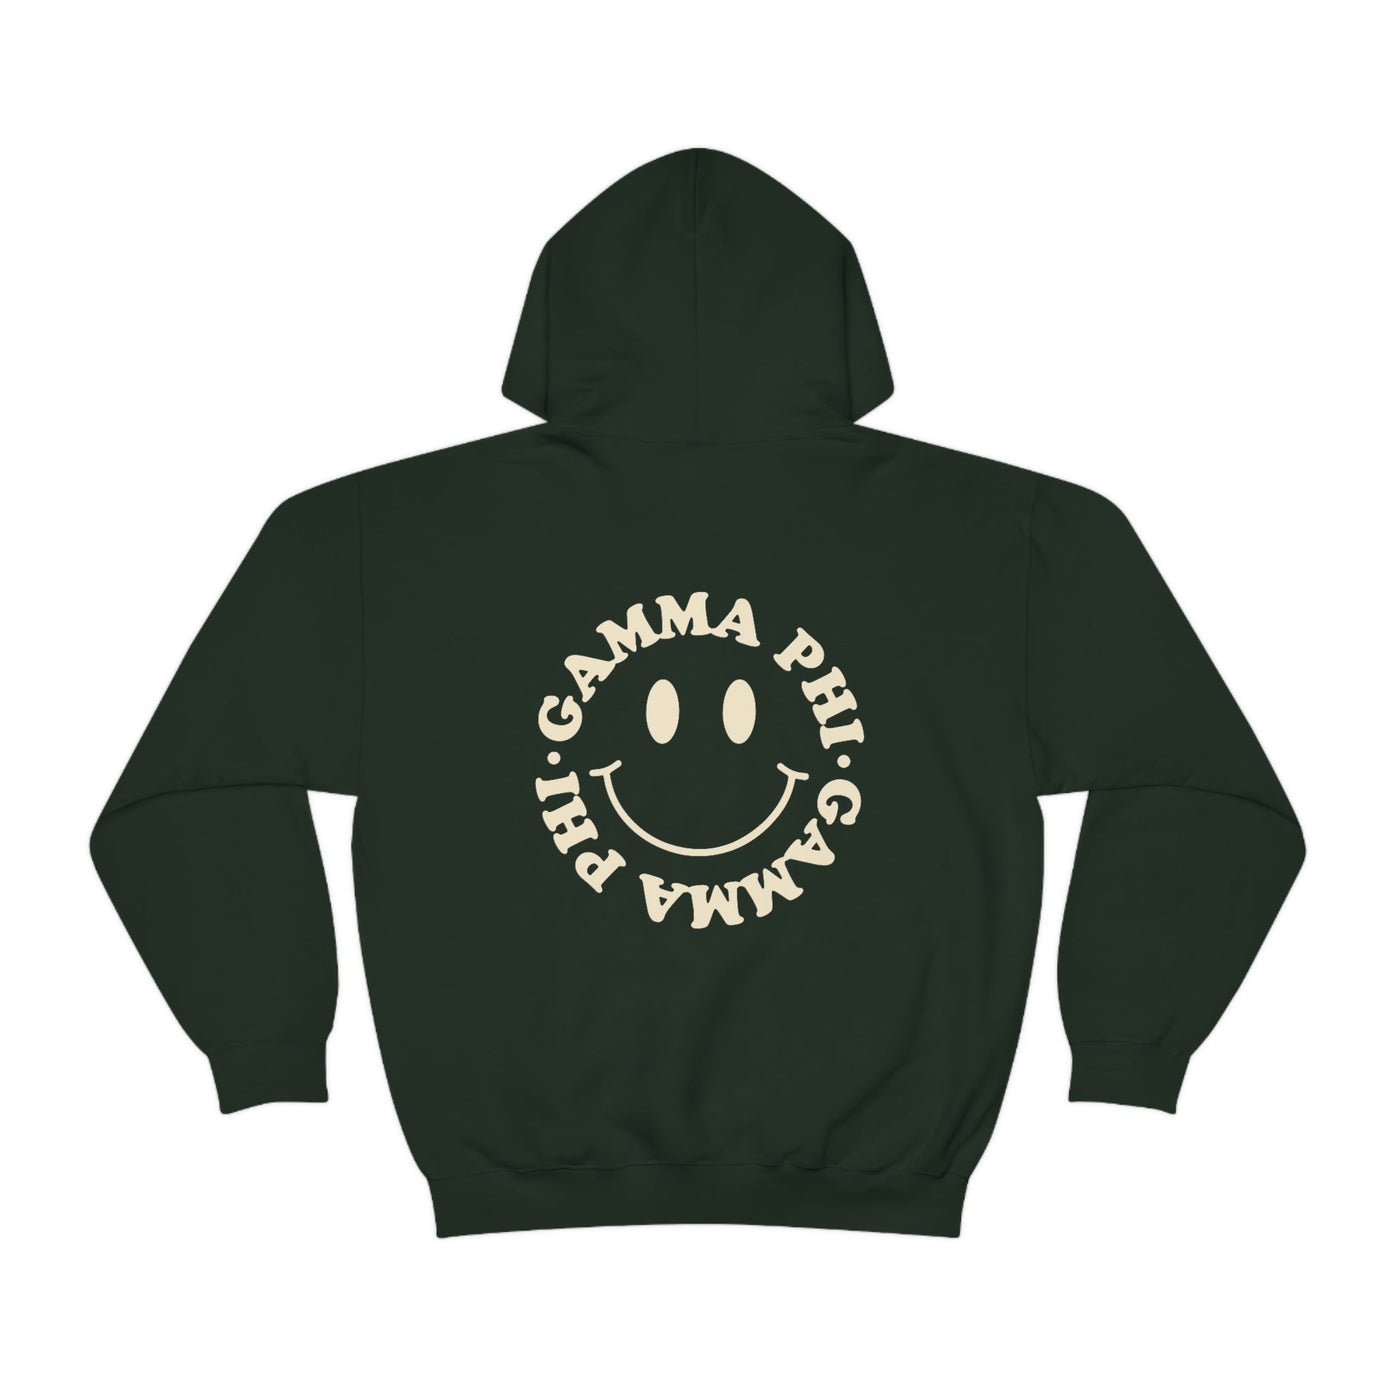 Gamma Phi Beta Smiley Sorority Sweatshirt | Trendy GPhi Custom Sorority Hoodie